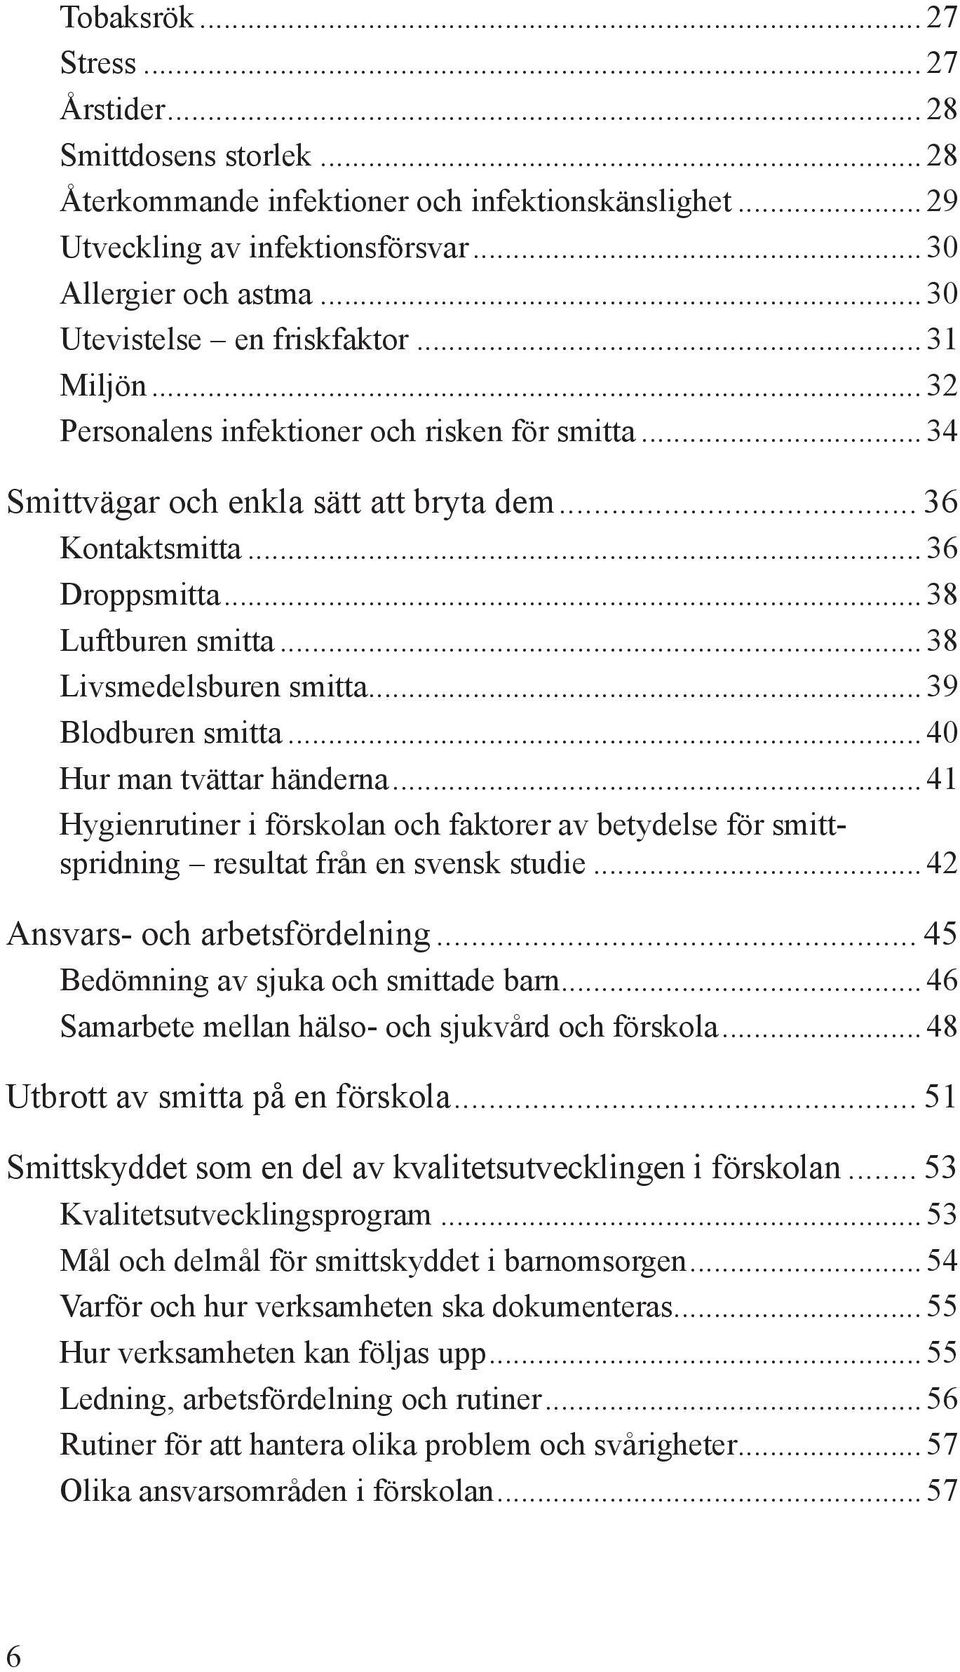 ..38 Livsmedelsburen smitta...39 Blodburen smitta...40 Hur man tvättar händerna...41 Hygienrutiner i förskolan och faktorer av betydelse för smittspridning resultat från en svensk studie.